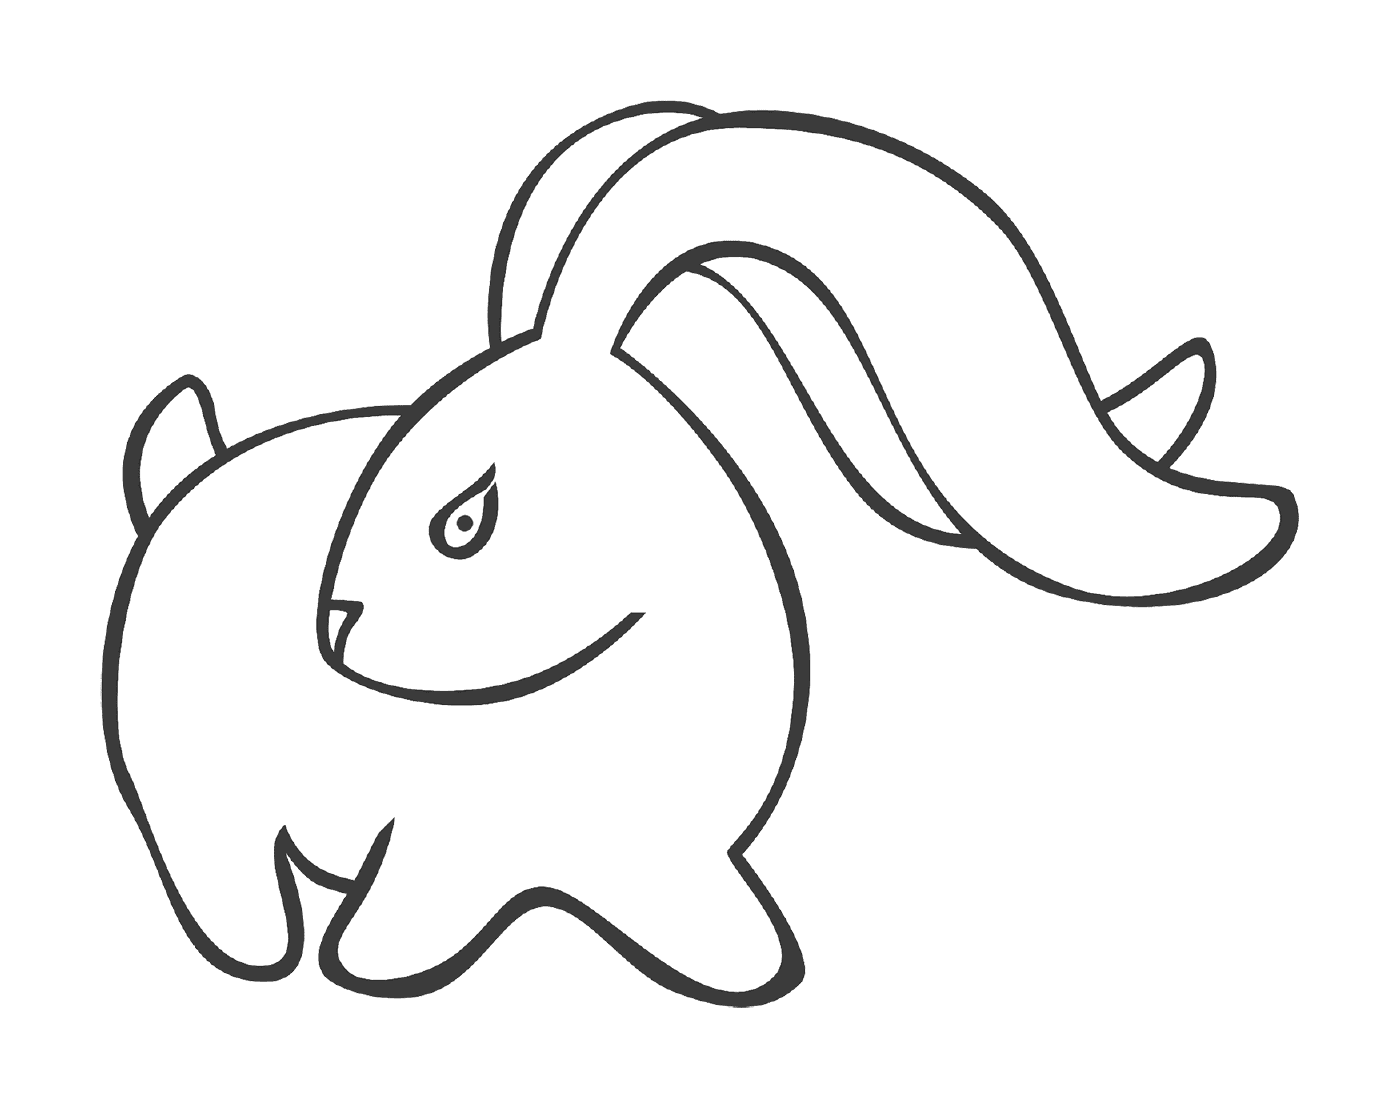  Conejo con orejas largas estilizadas 